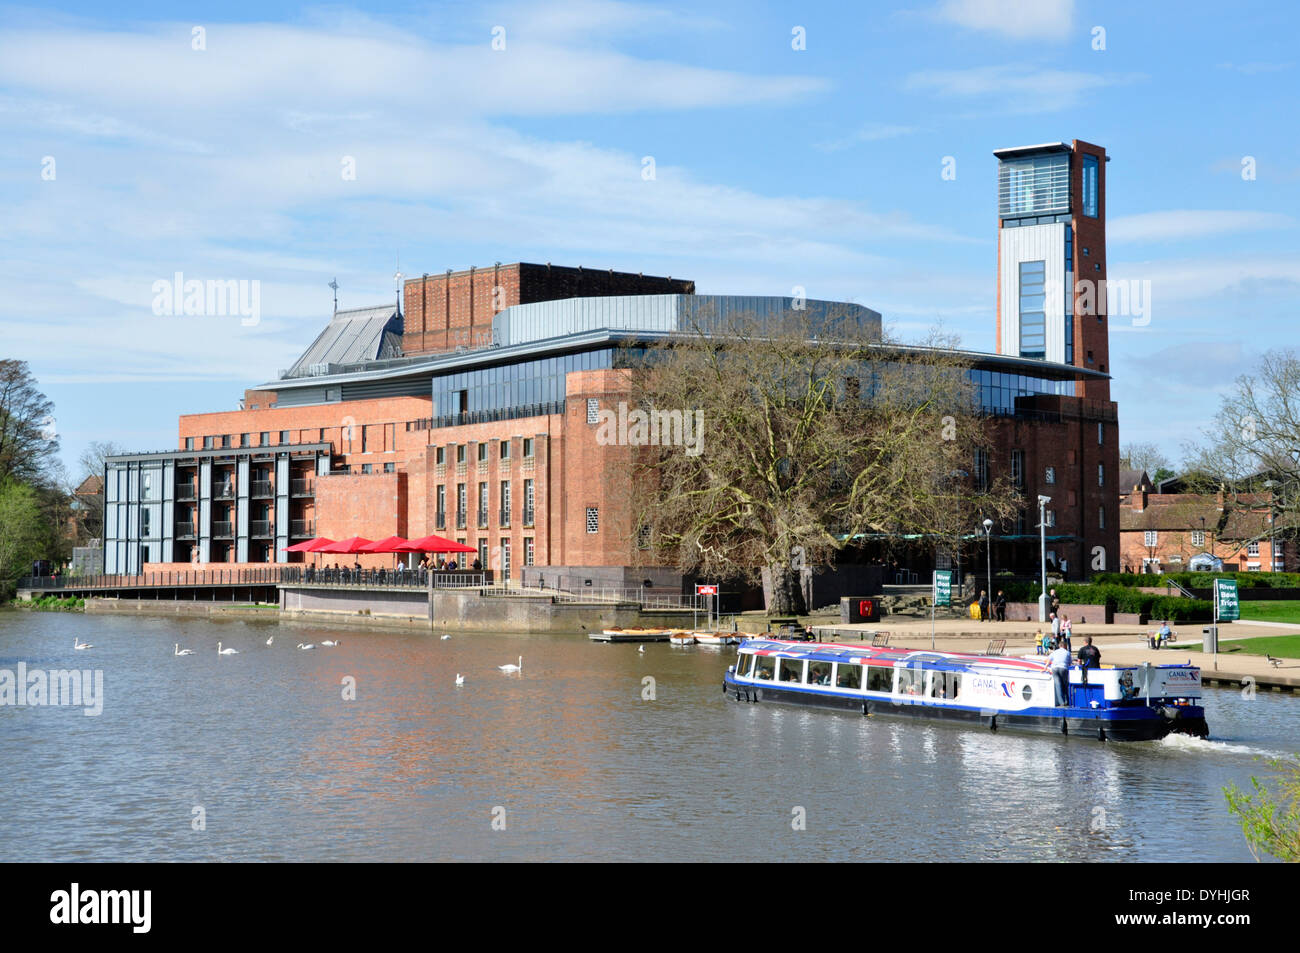 Stratford Upon Avon - Avon - vue de l'théâtre RSC - bateau de croisière - rivière passant soleil du printemps - blue sky Banque D'Images